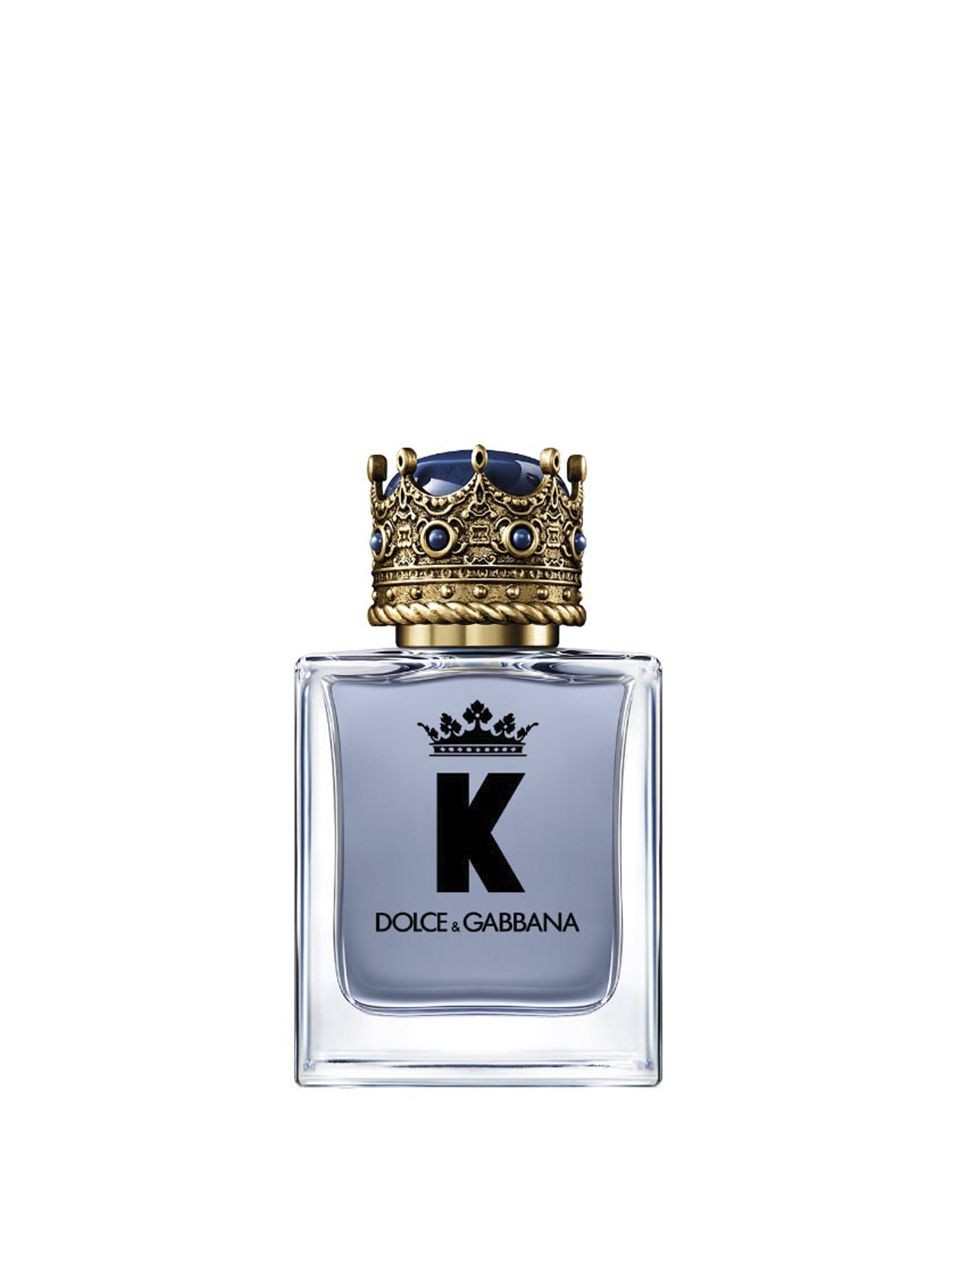 K by Dolce&Gabbana Eau de Toilette 50 ml